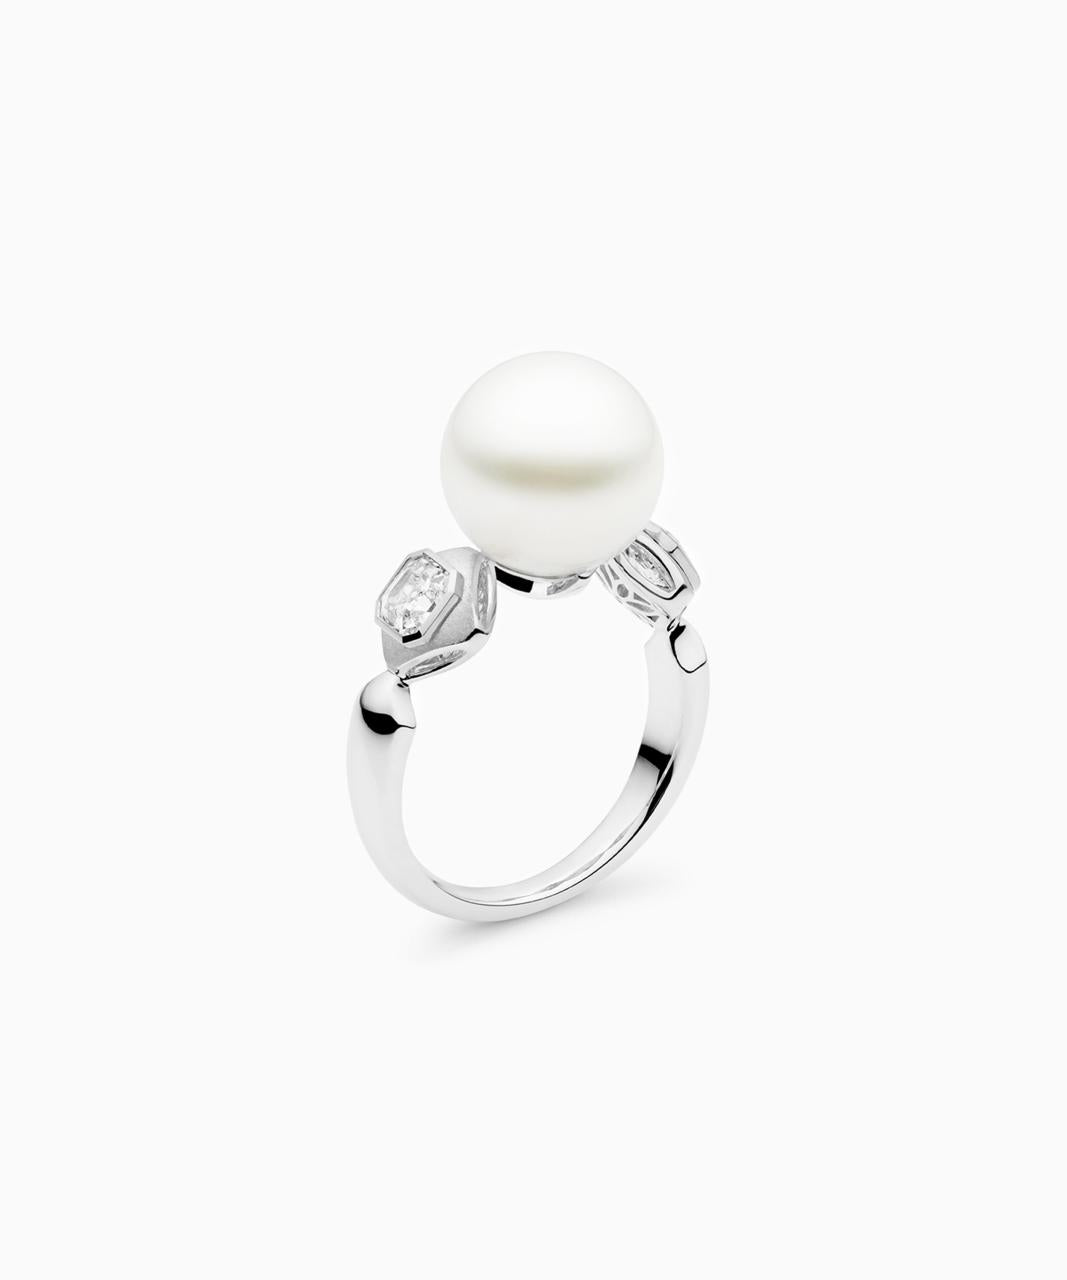 Kailis – Royal Meridian Pearl Ring, White Gold